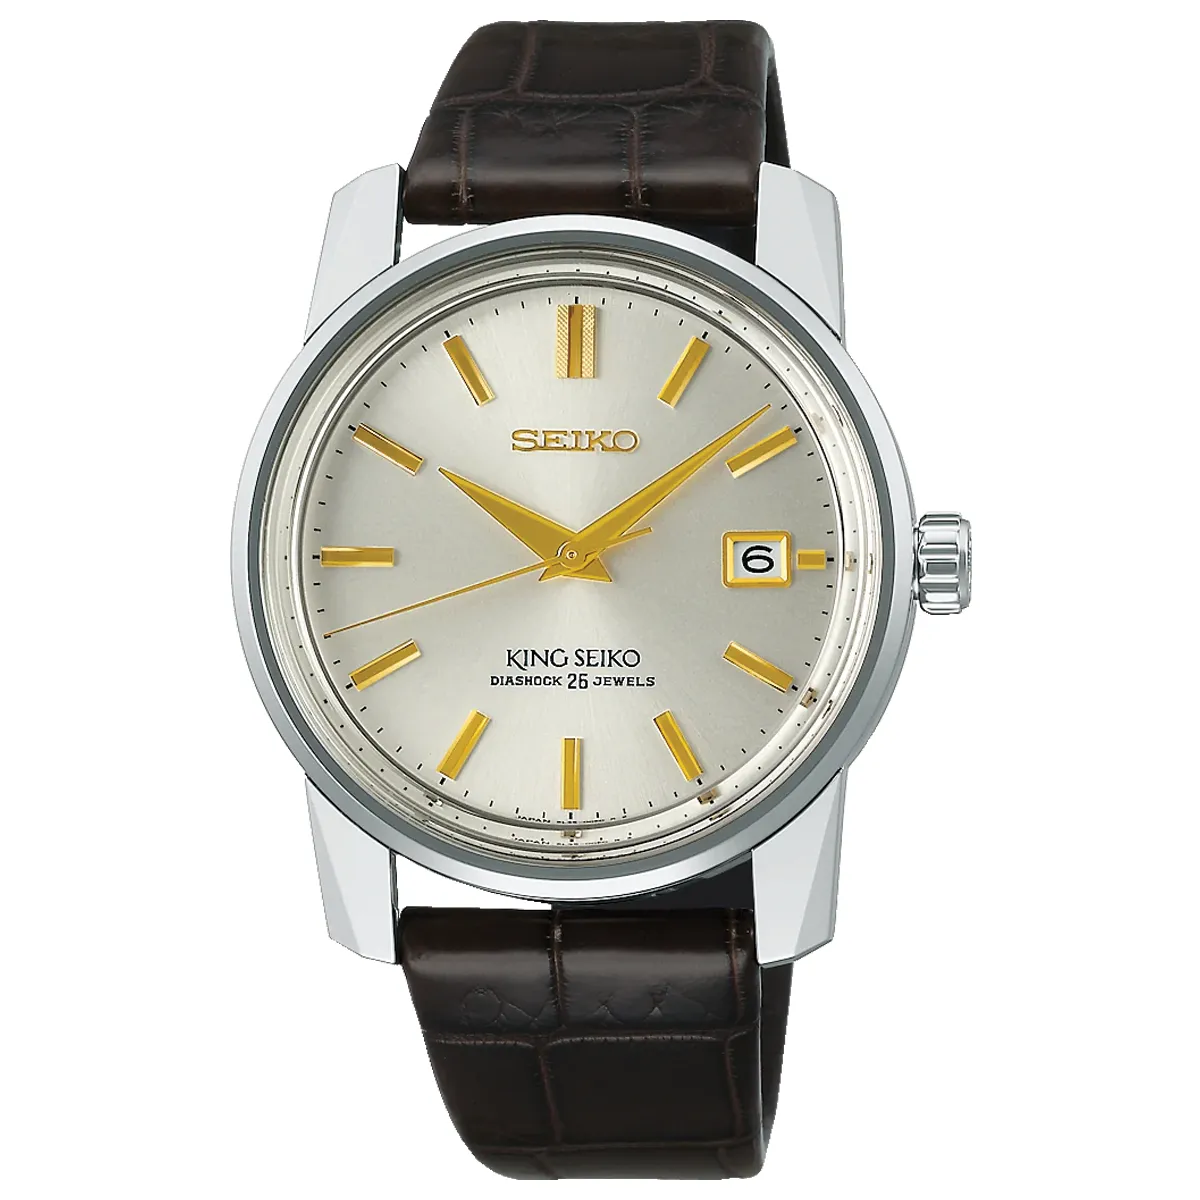 Đồng hồ King Seiko KSK Re-Creation Limited Edition SDKA003 (SJE087) mặt số màu vàng champage. Dây đeo bằng da. Thân vỏ bằng thép.